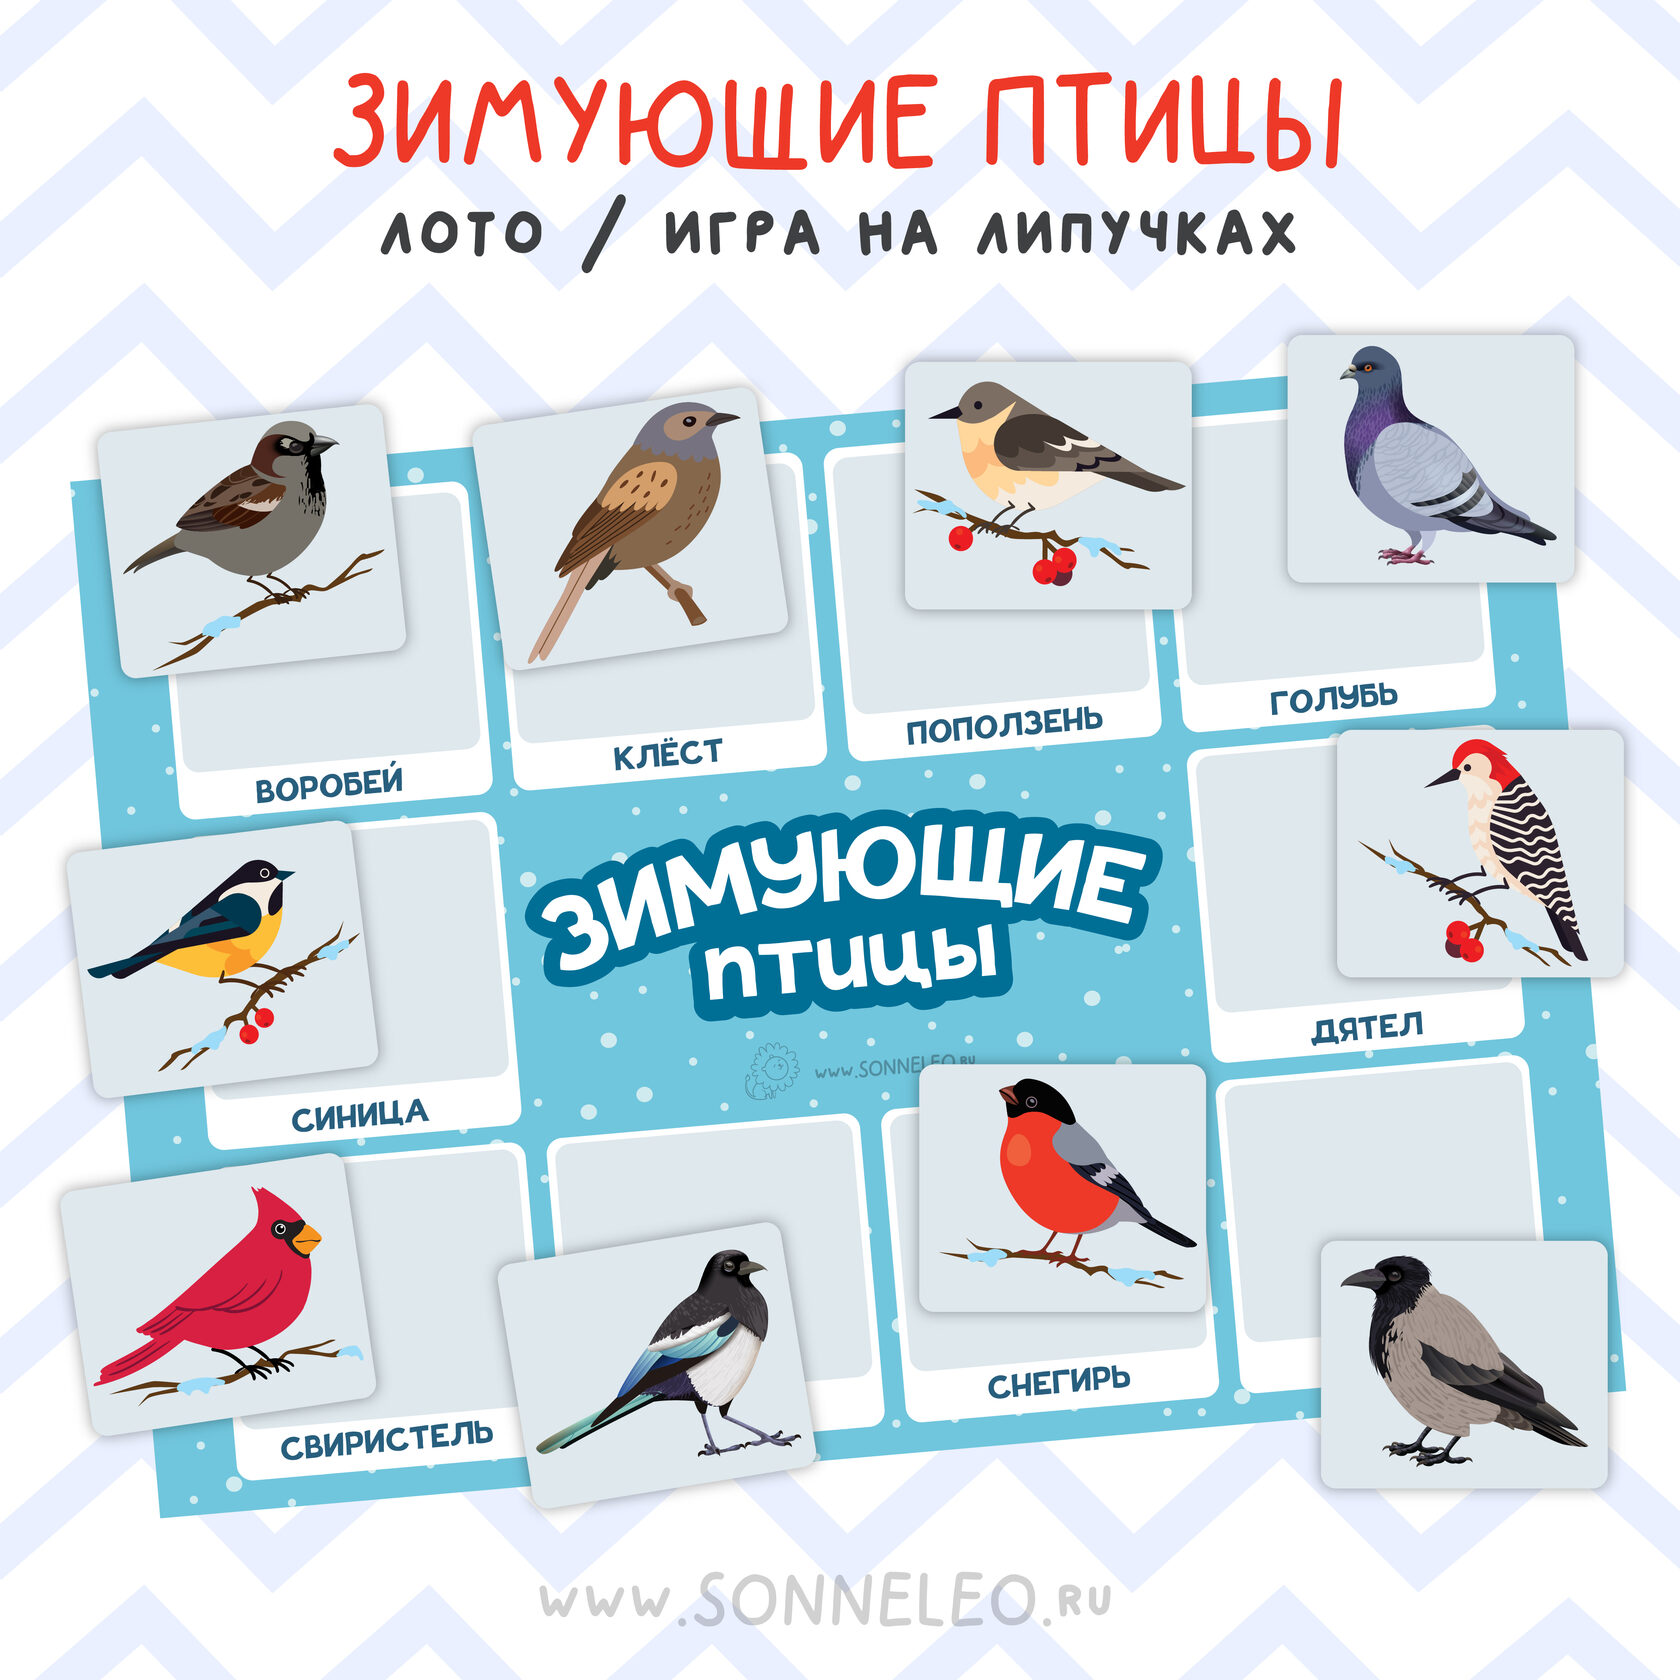 птицы сибири картинки и названия птиц зимующие